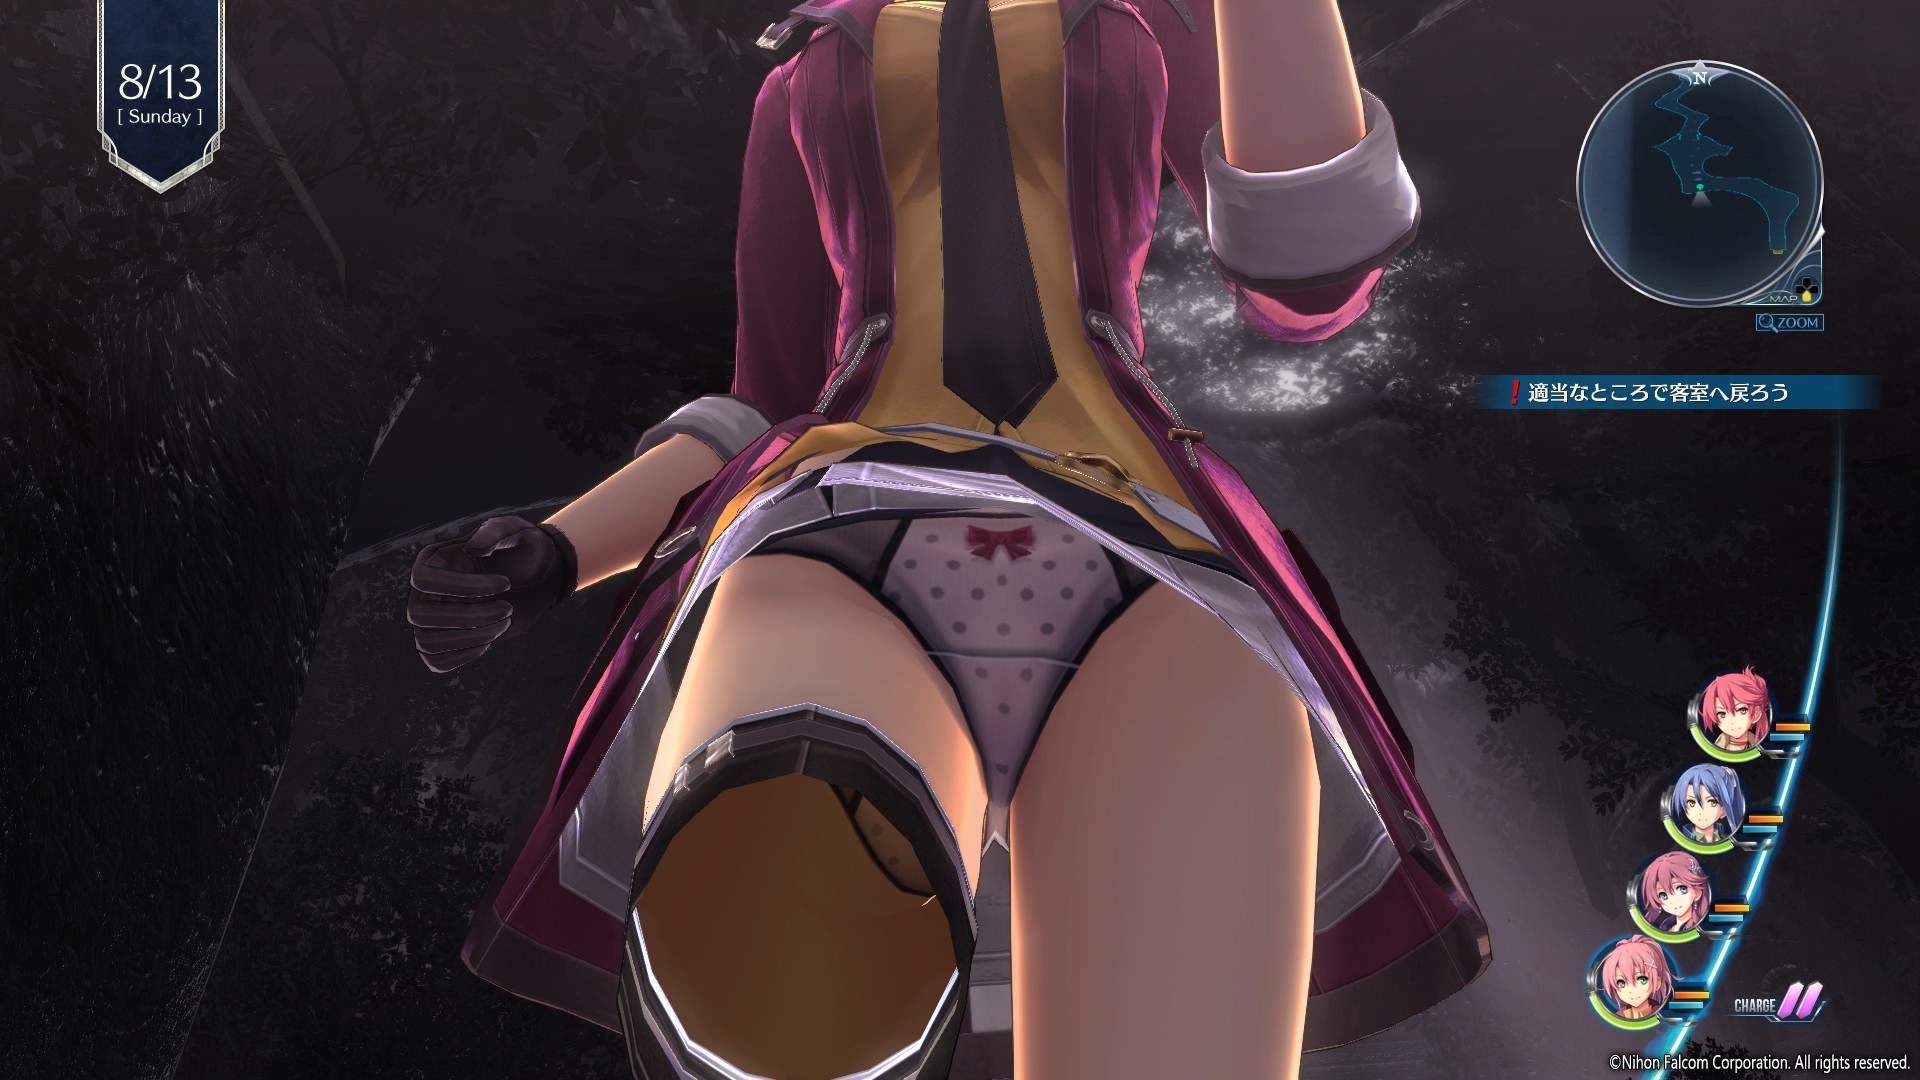 Erotic pants Gattsuri peek from below the skirt of [Legend of Heroes Senran IV] of the girl in fully exposed! 2